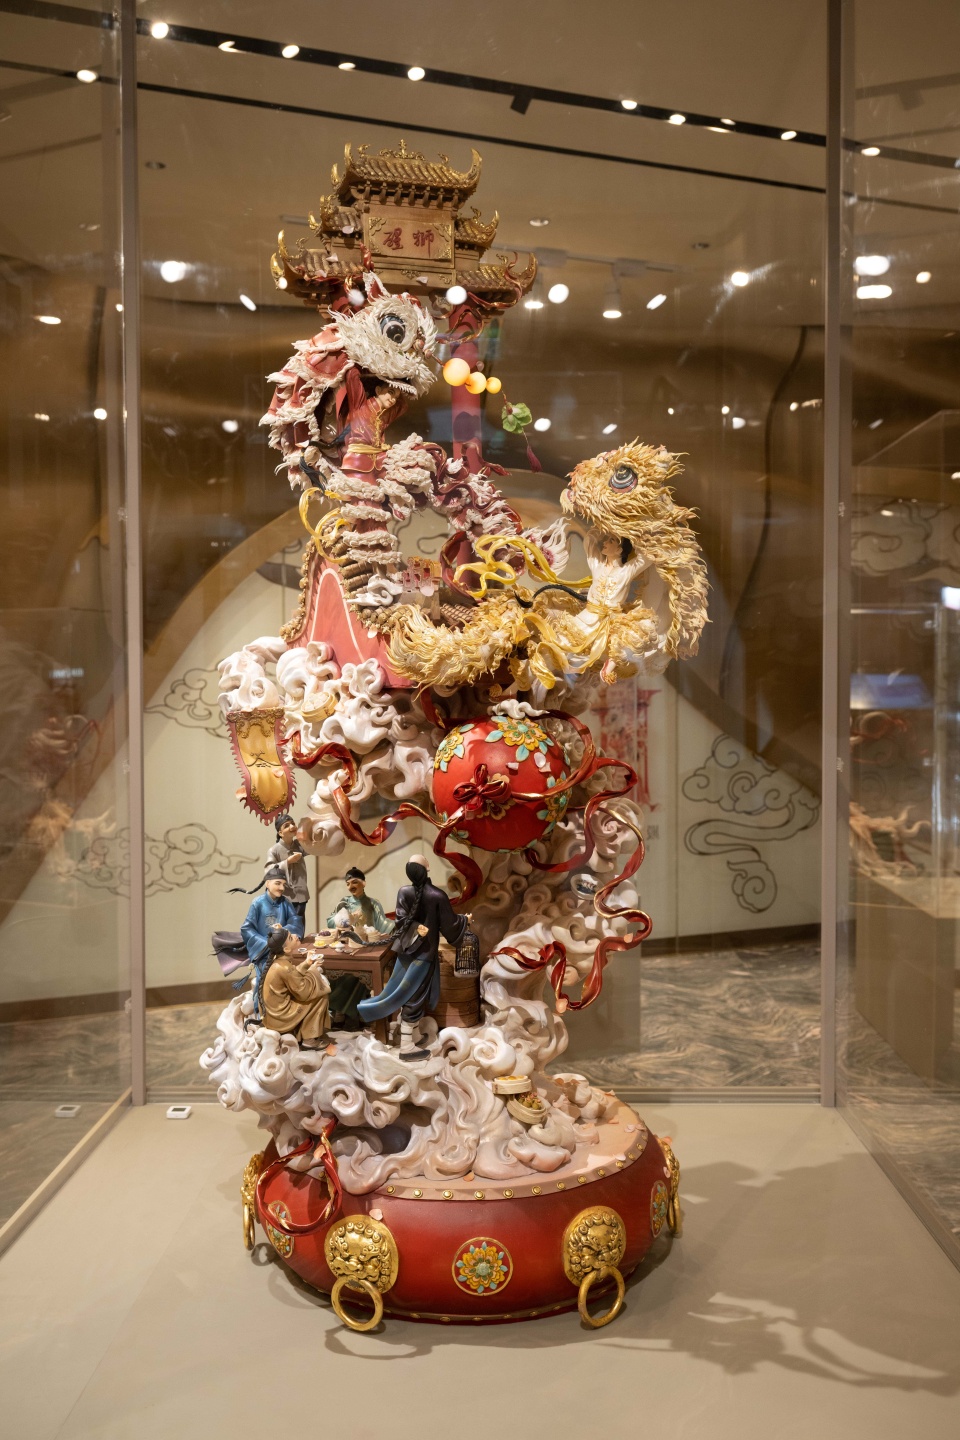 「中国糖王」周毅翻糖雕塑展澳门举行-用蛋糕艺术展现中华文化